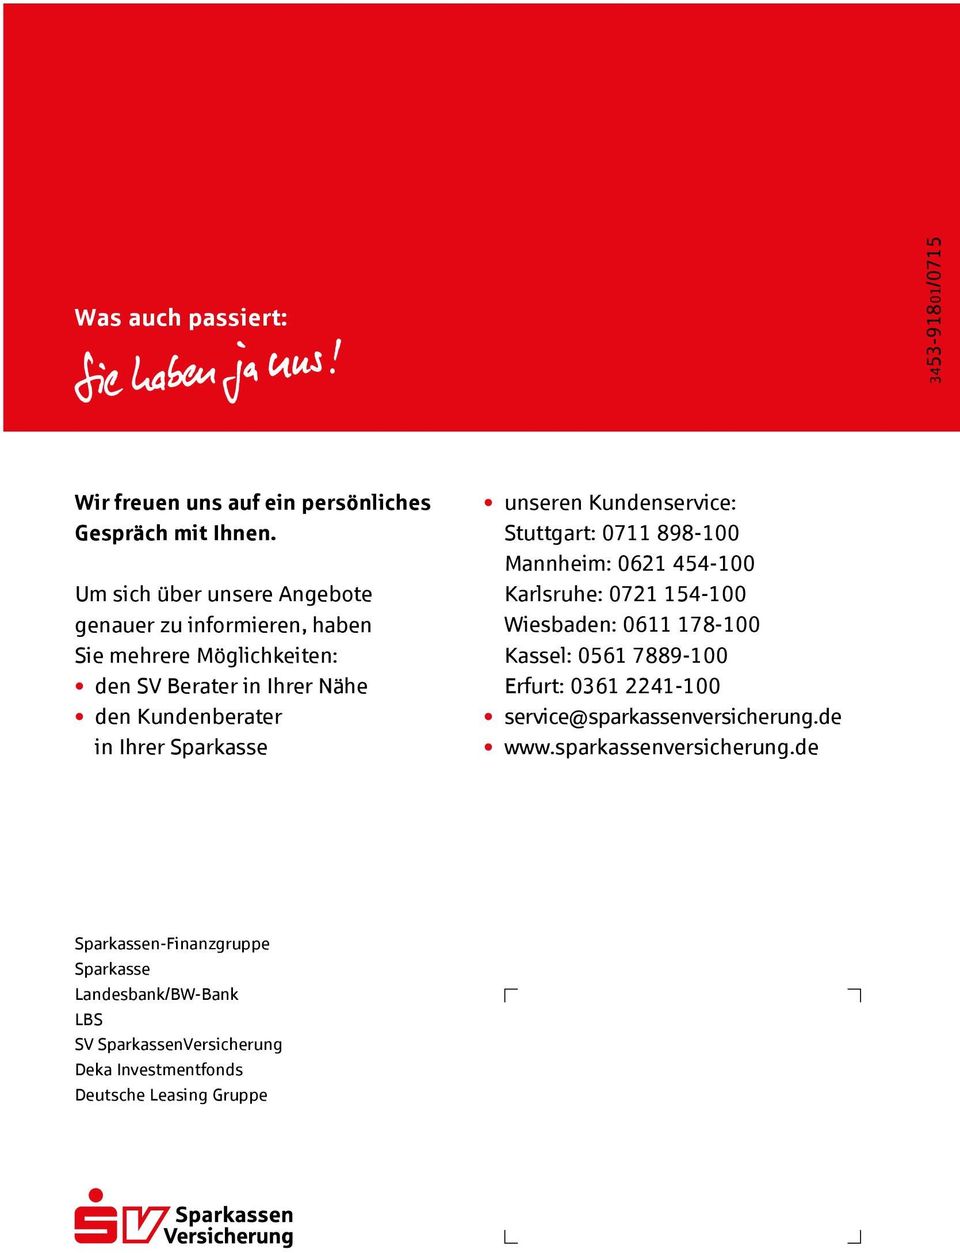 Sparkasse unseren Kundenservice: Stuttgart: 0711 898-100 Mannheim: 0621 454-100 Karlsruhe: 0721 154-100 Wiesbaden: 0611 178-100 Kassel: 0561